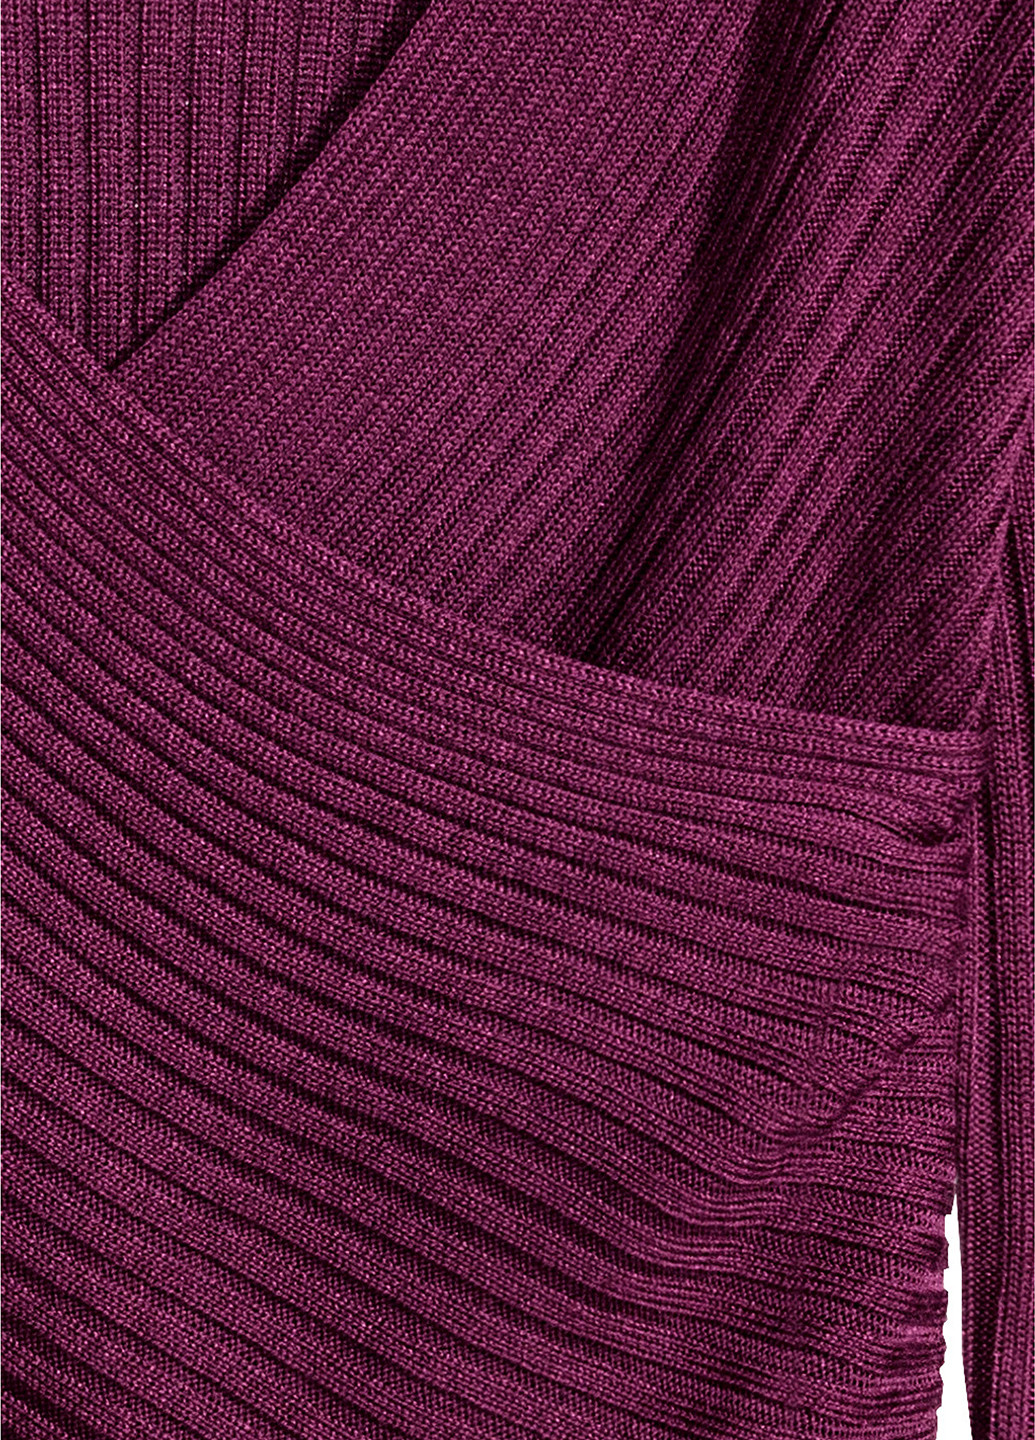 Сиреневый демисезонный пуловер пуловер H&M